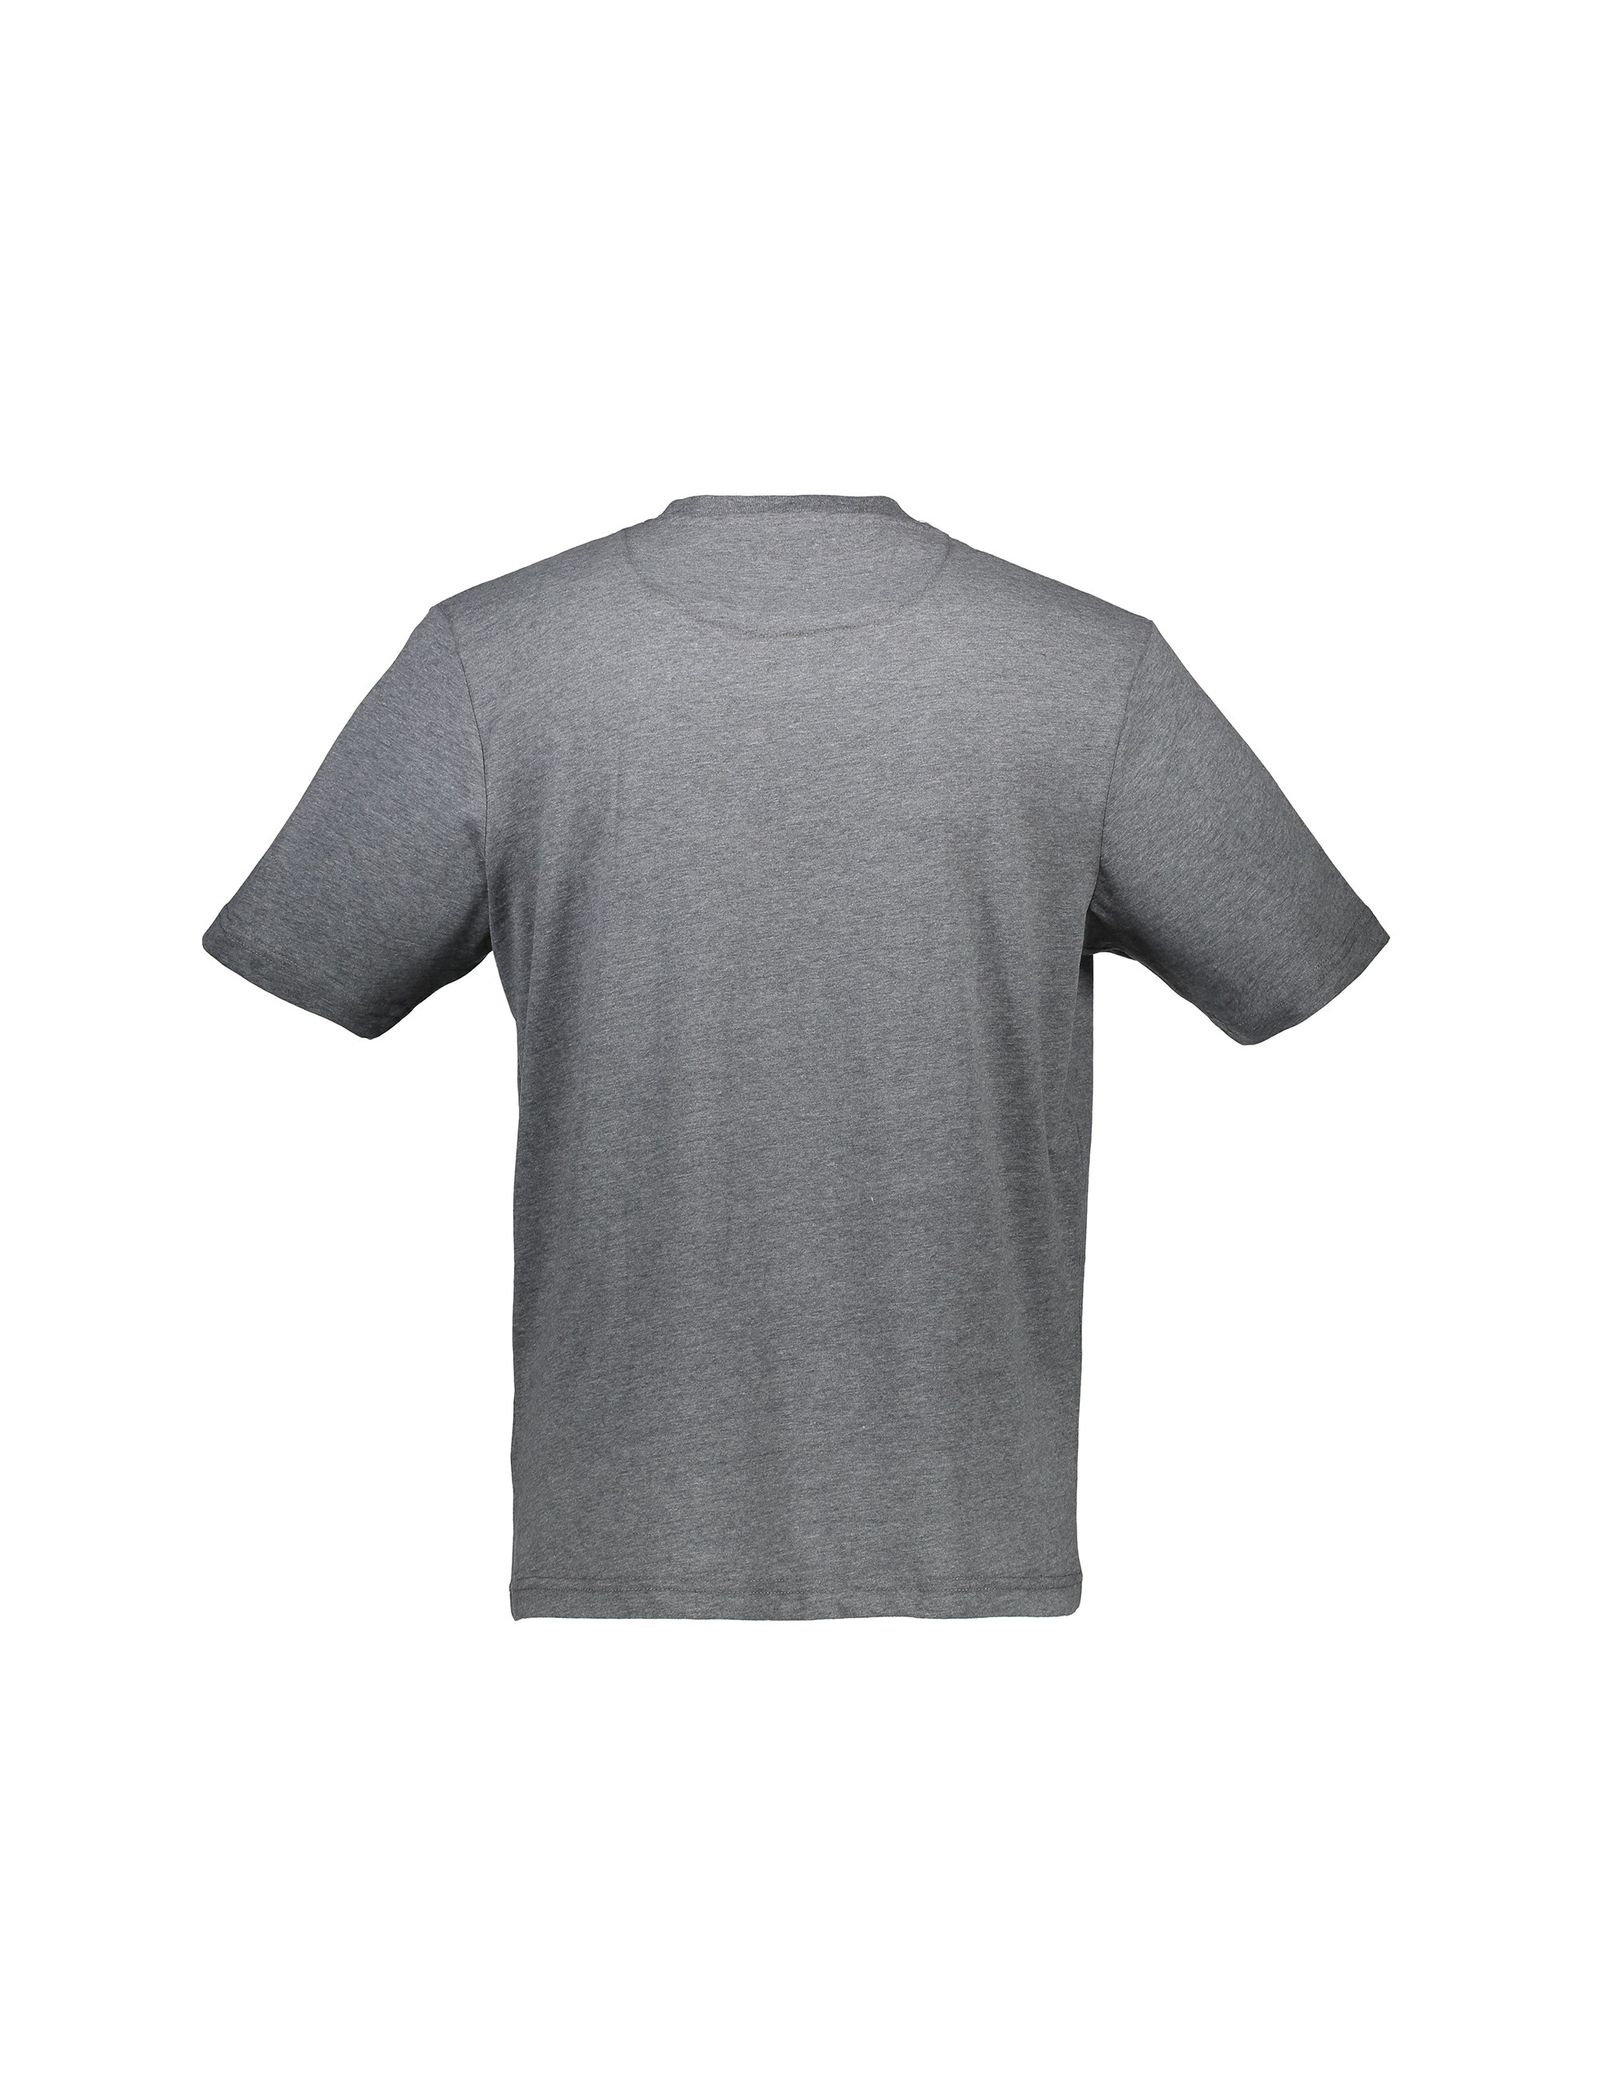 تی شرت و شلوار راحتی نخی مردانه - مین نیو اینگلند - طوسي - 4